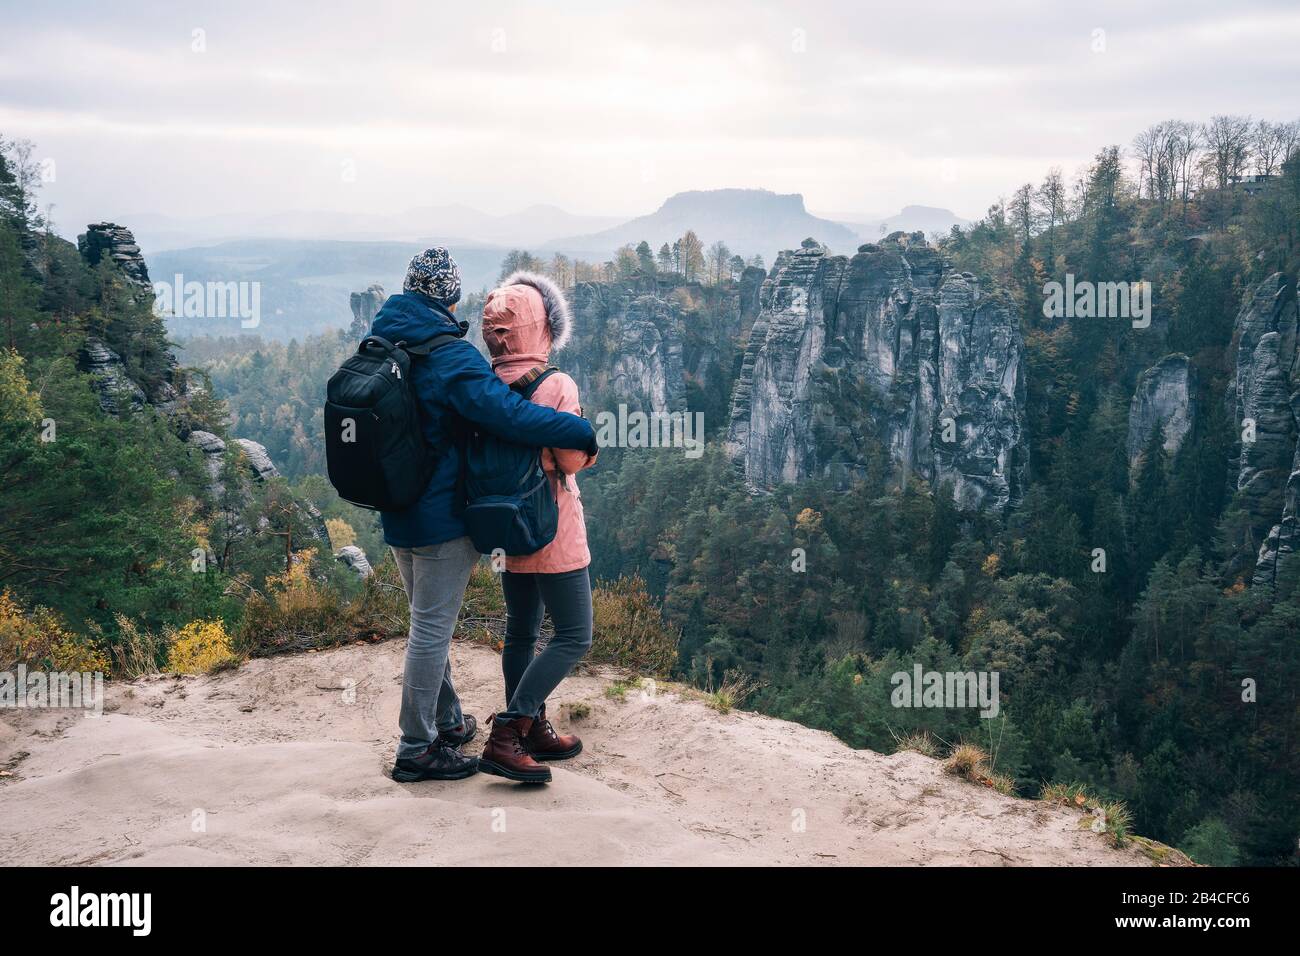 Junges Paar in winterlicher Kleidung mit Rucksäcken, die nach Wanderung auf einem Kalksteinfelsen stehend die Ansicht der Landschaft genießt, Reise-li Foto Stock